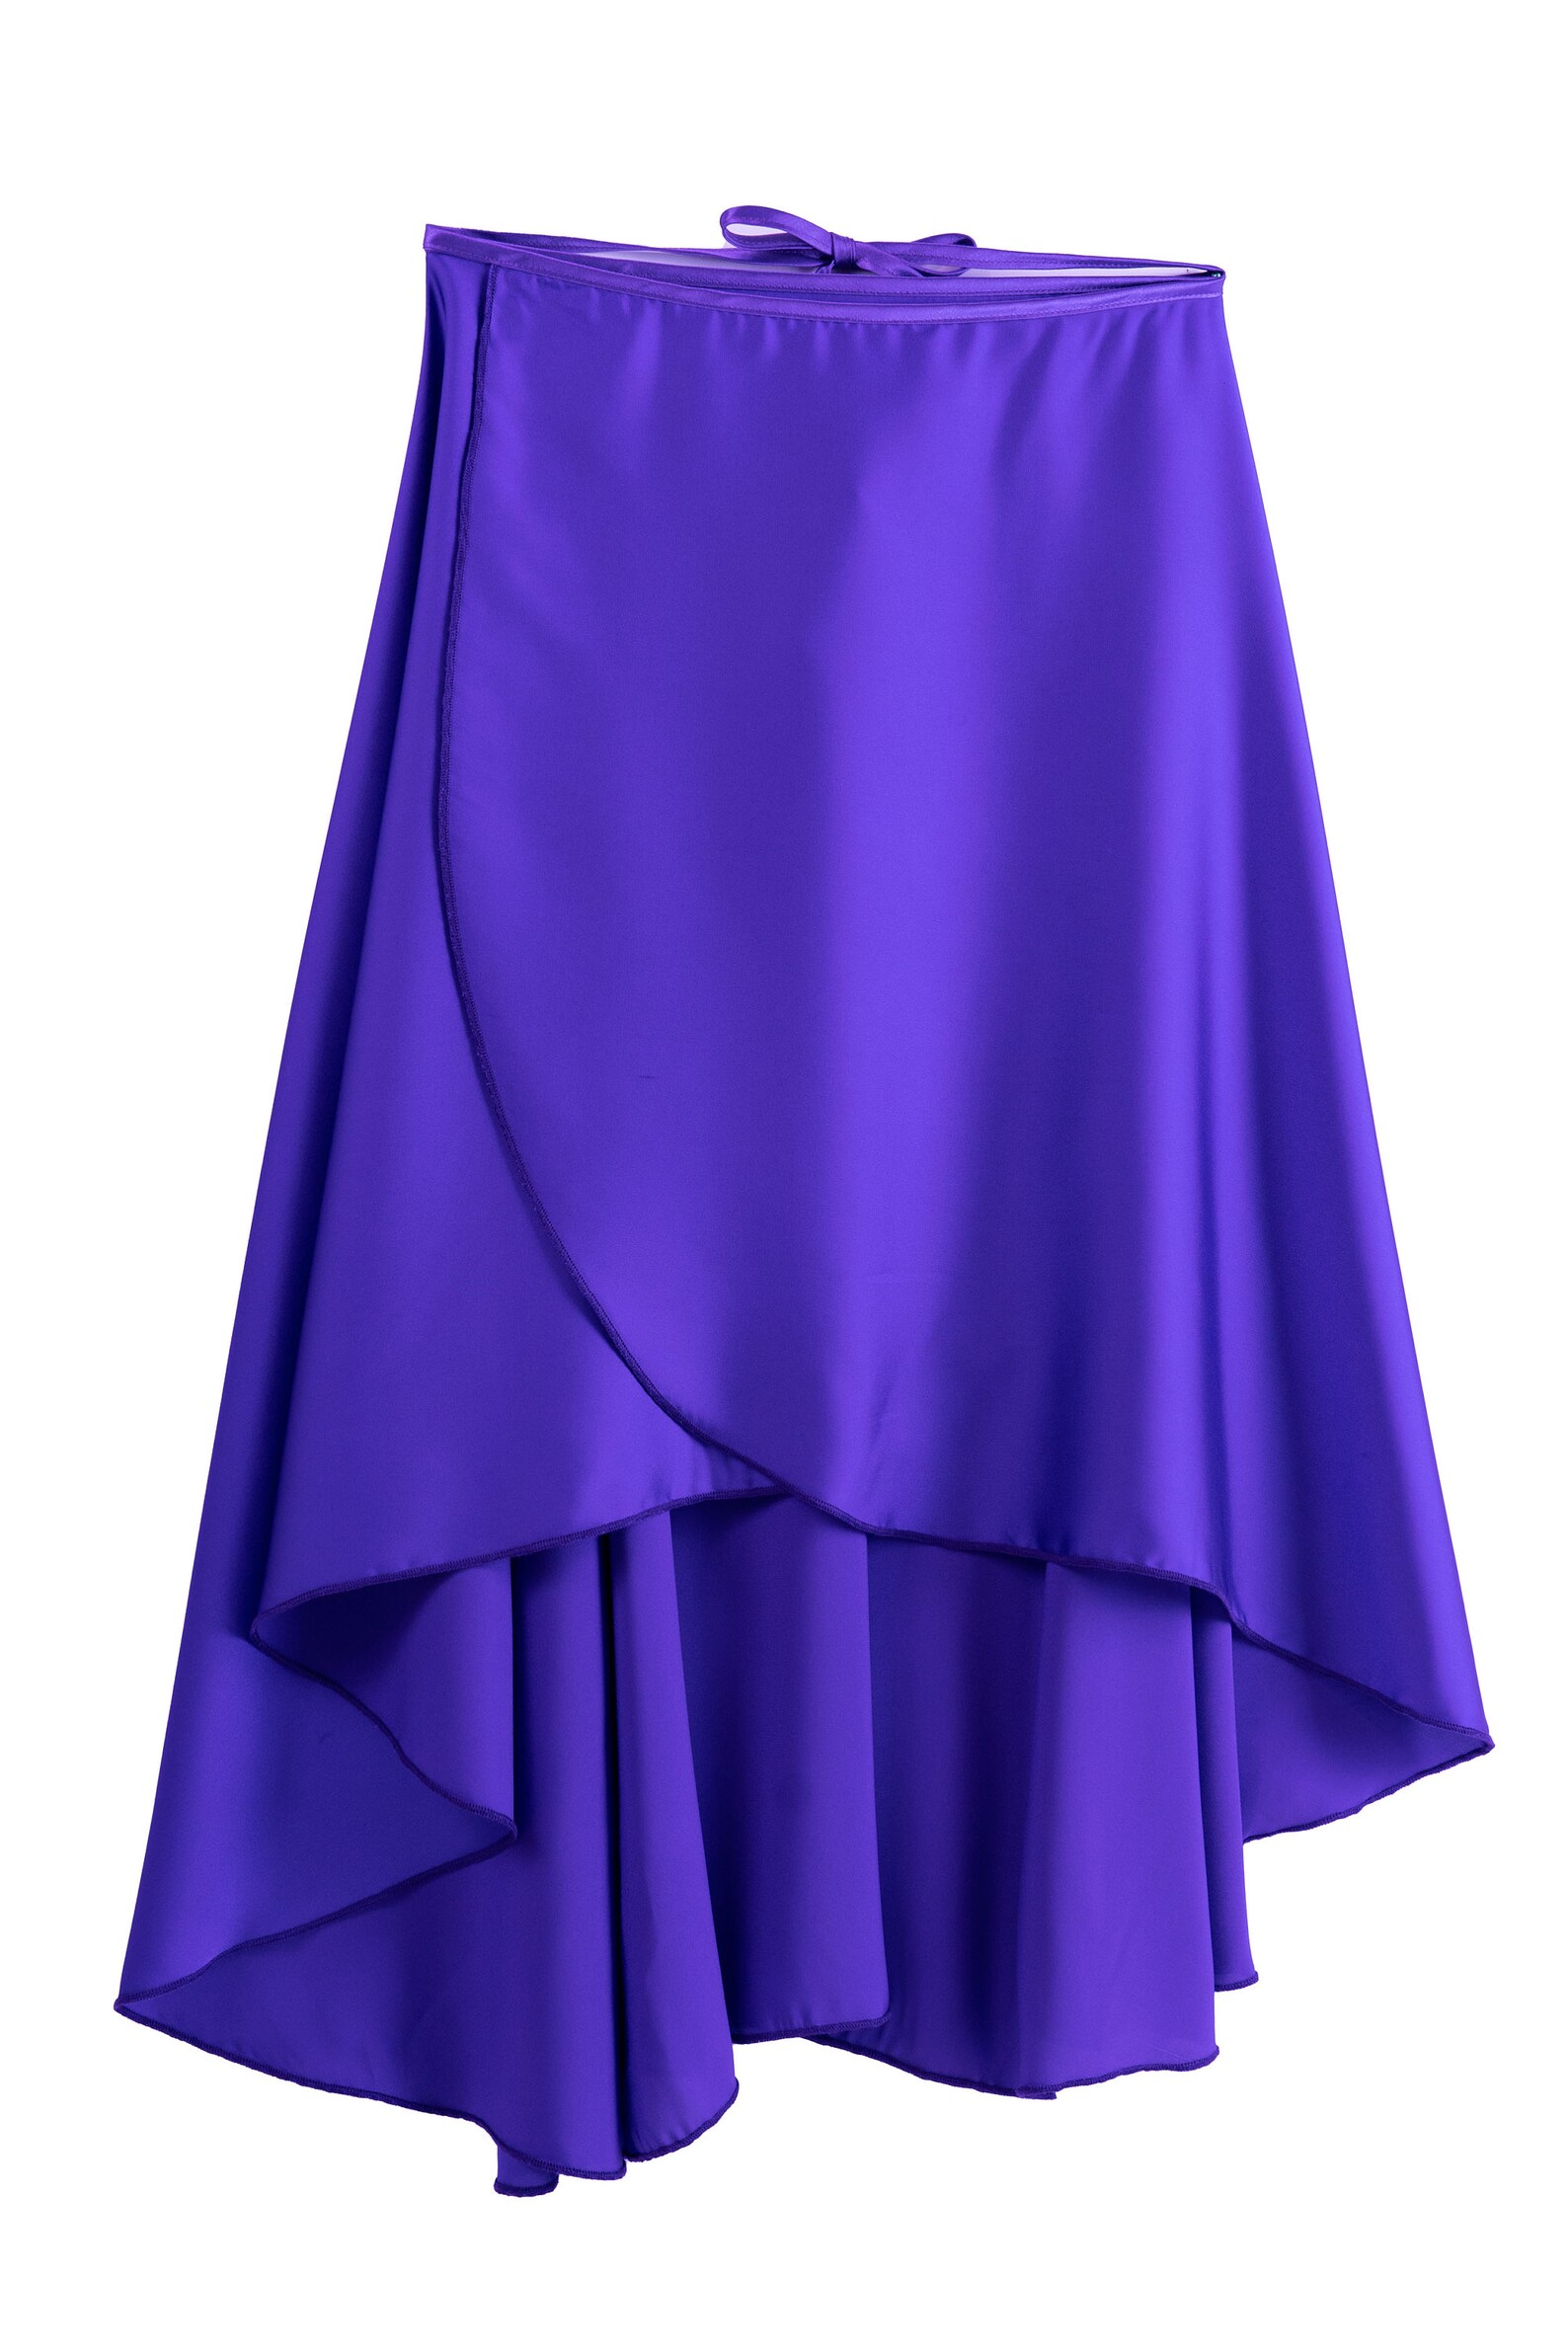 Ballet skirt purple ballet skirt wrap ballet skirt ready to | Etsy